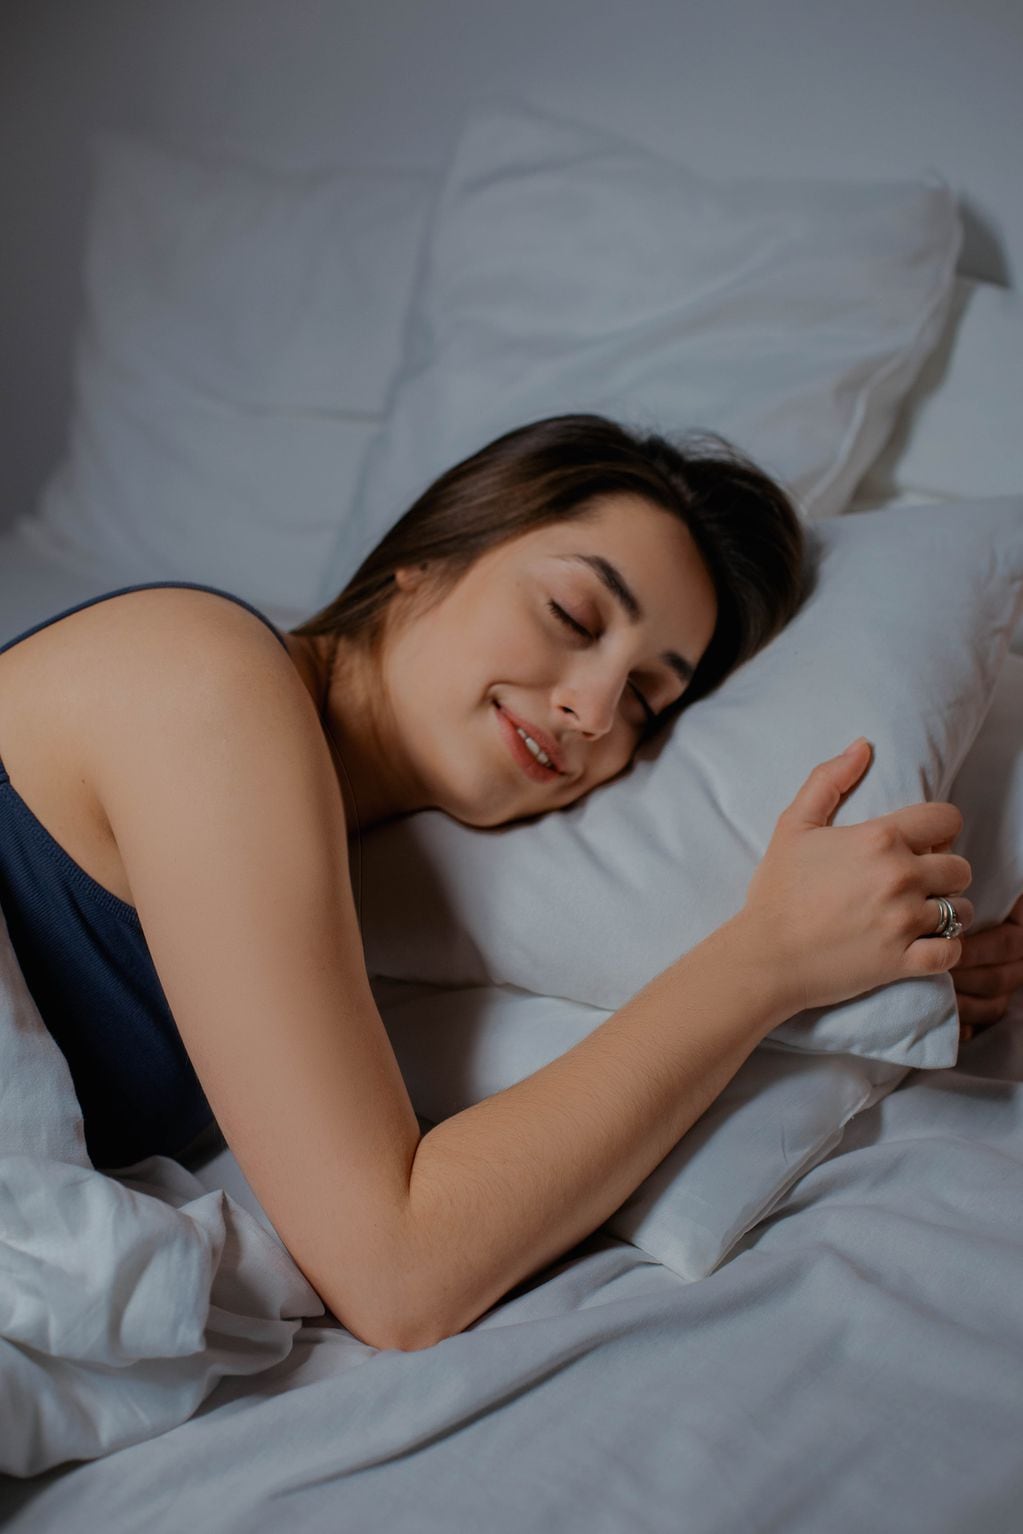 La siesta es algo inmanente a la costumbre mendocina y tiene gran popularidad porque permite reponer energías. Foto: Web